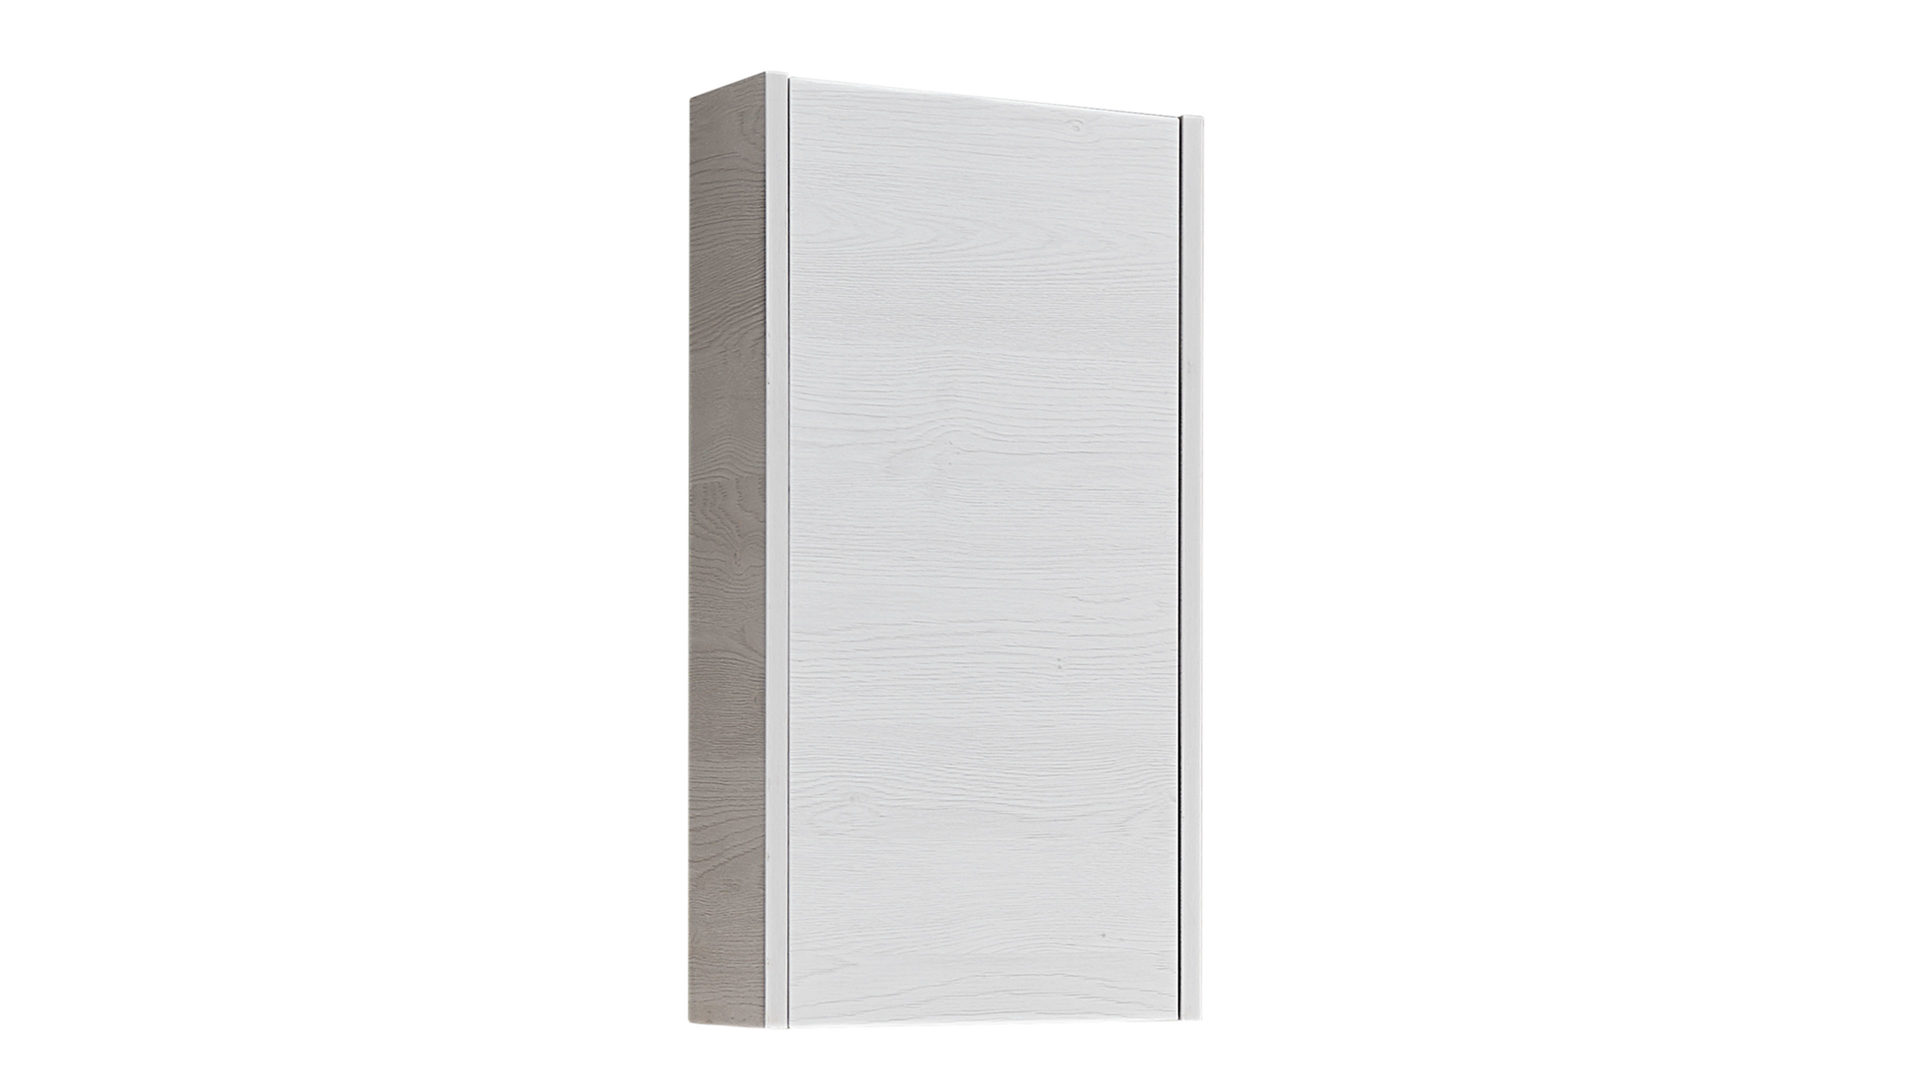 Hängeschrank Pelipal aus Holz in Weiß pelipal Bad-Hängeschrank Serie 6040 weiße eichefarbene Kunststoffoberflächen – eine Tür